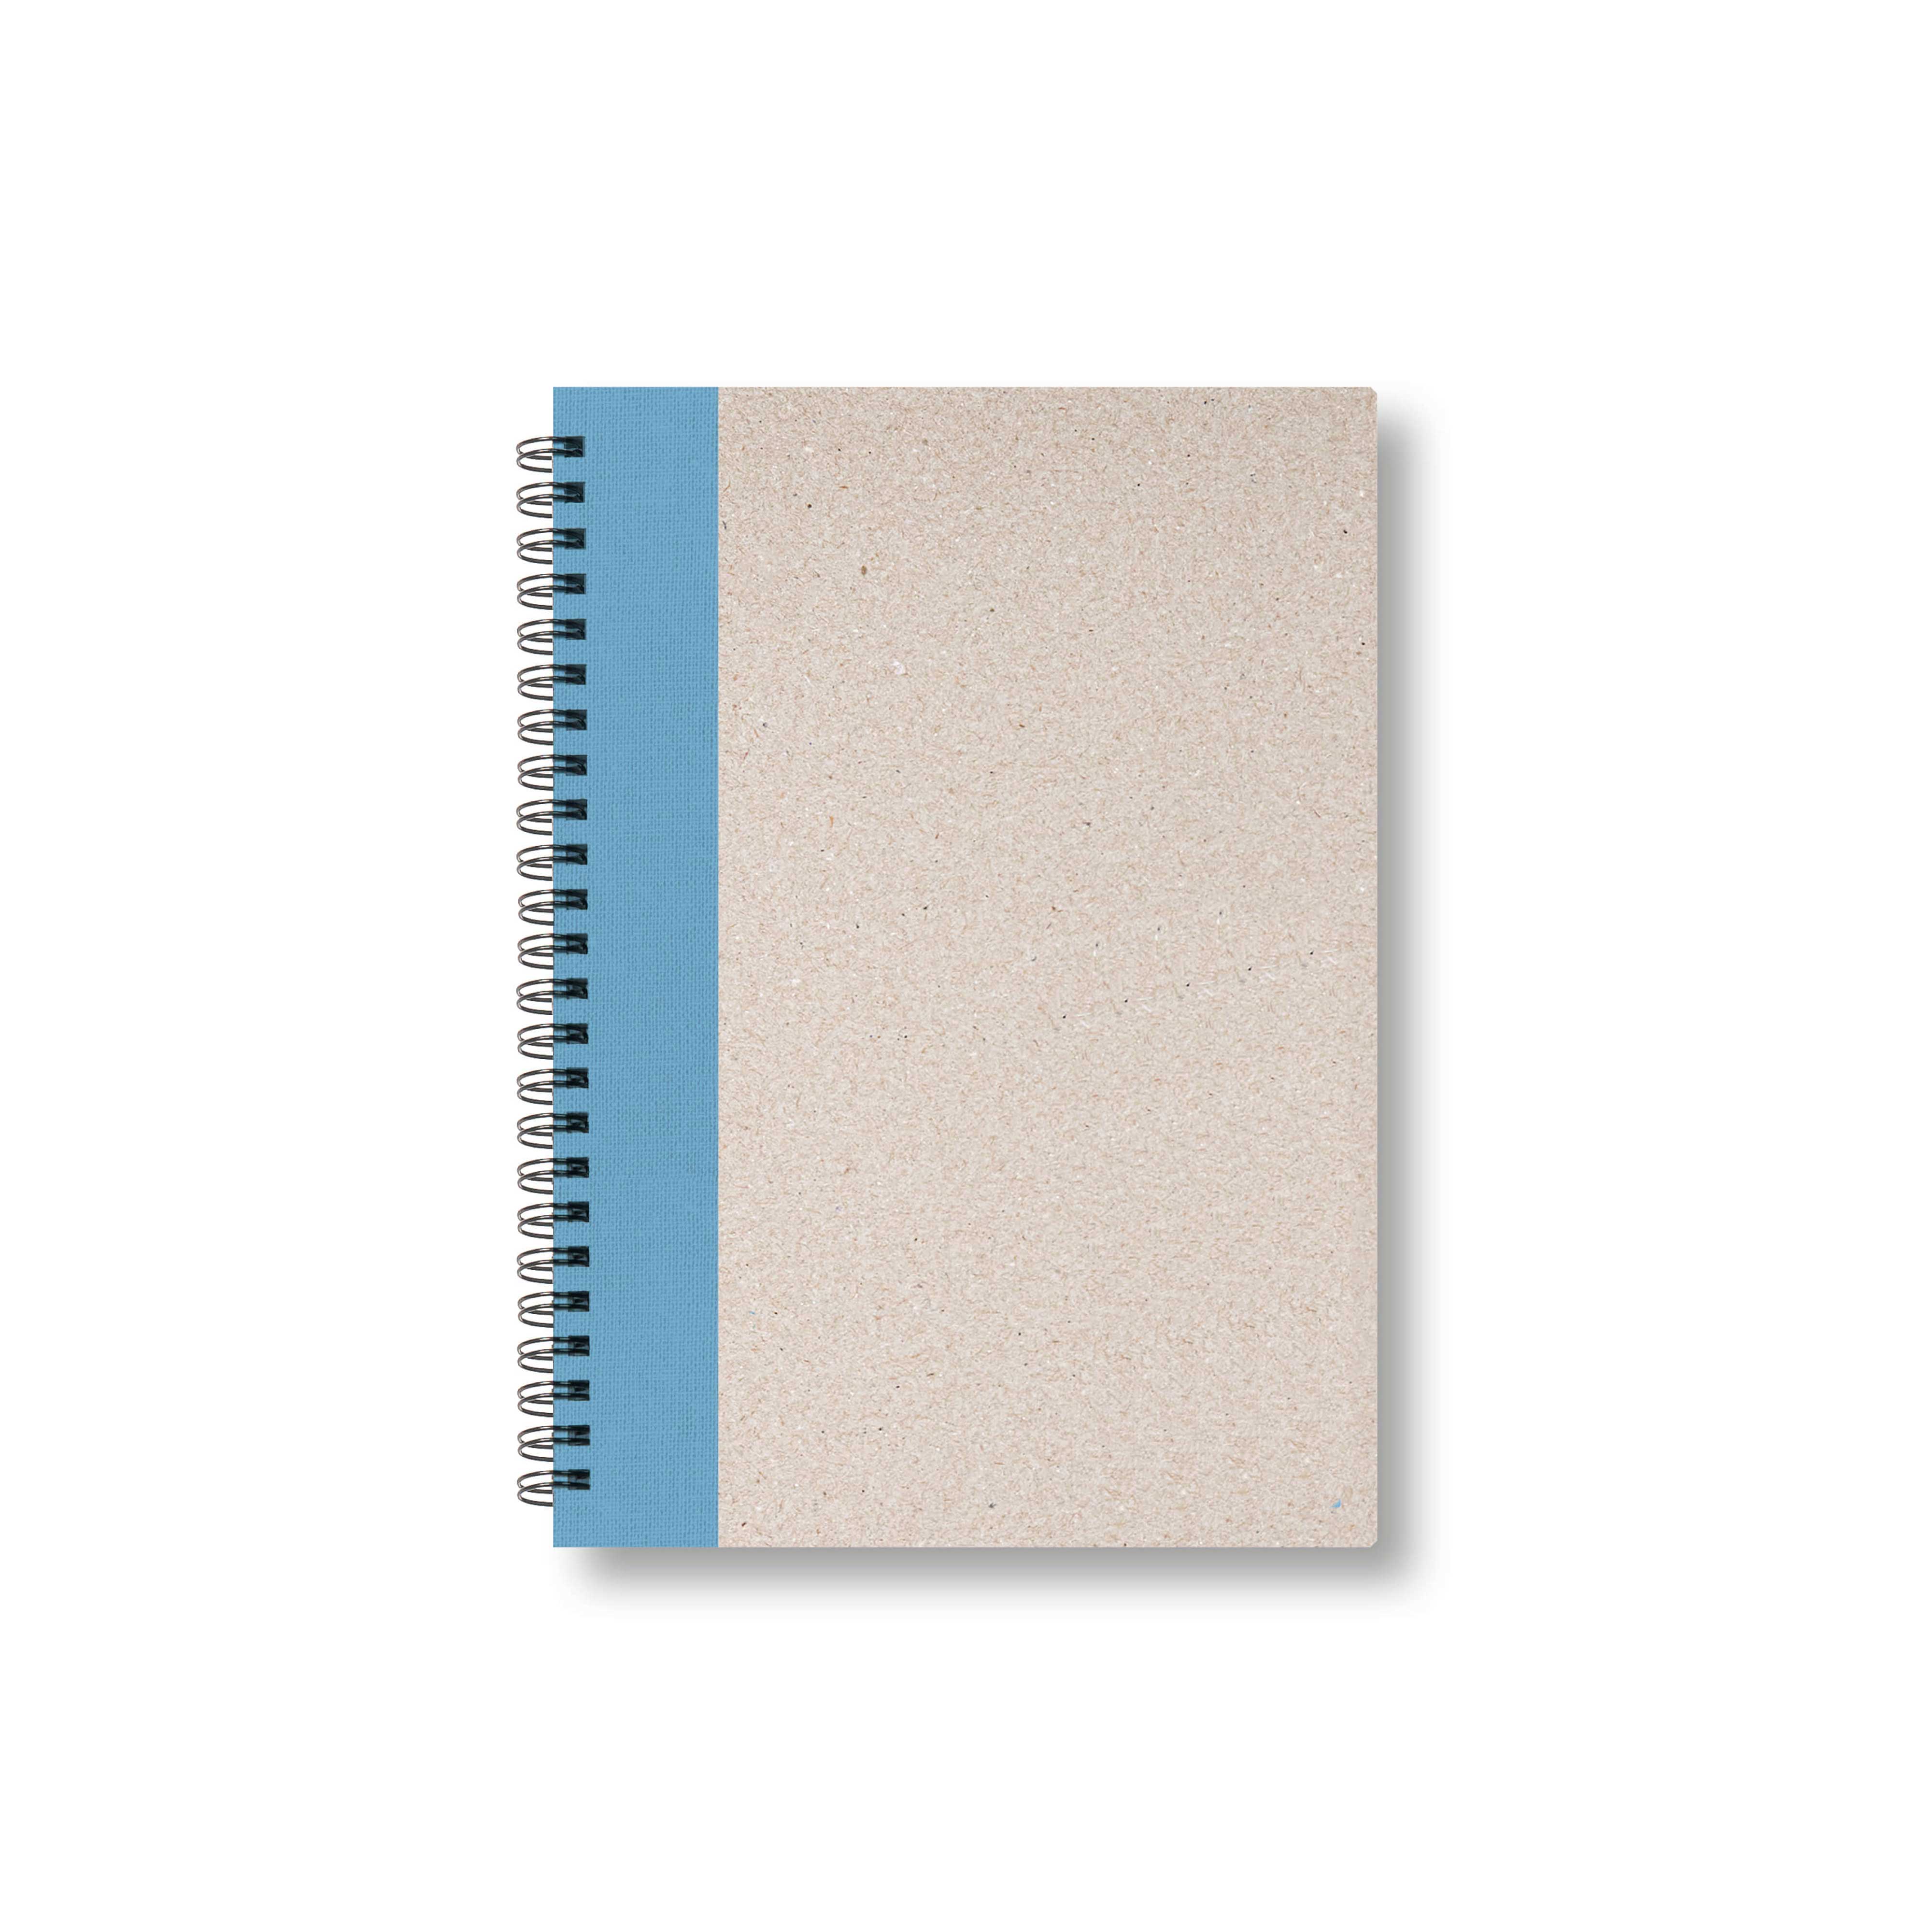 BOBO Zápisník, B6, čistý, světle modrý, konfiguruj si obálku